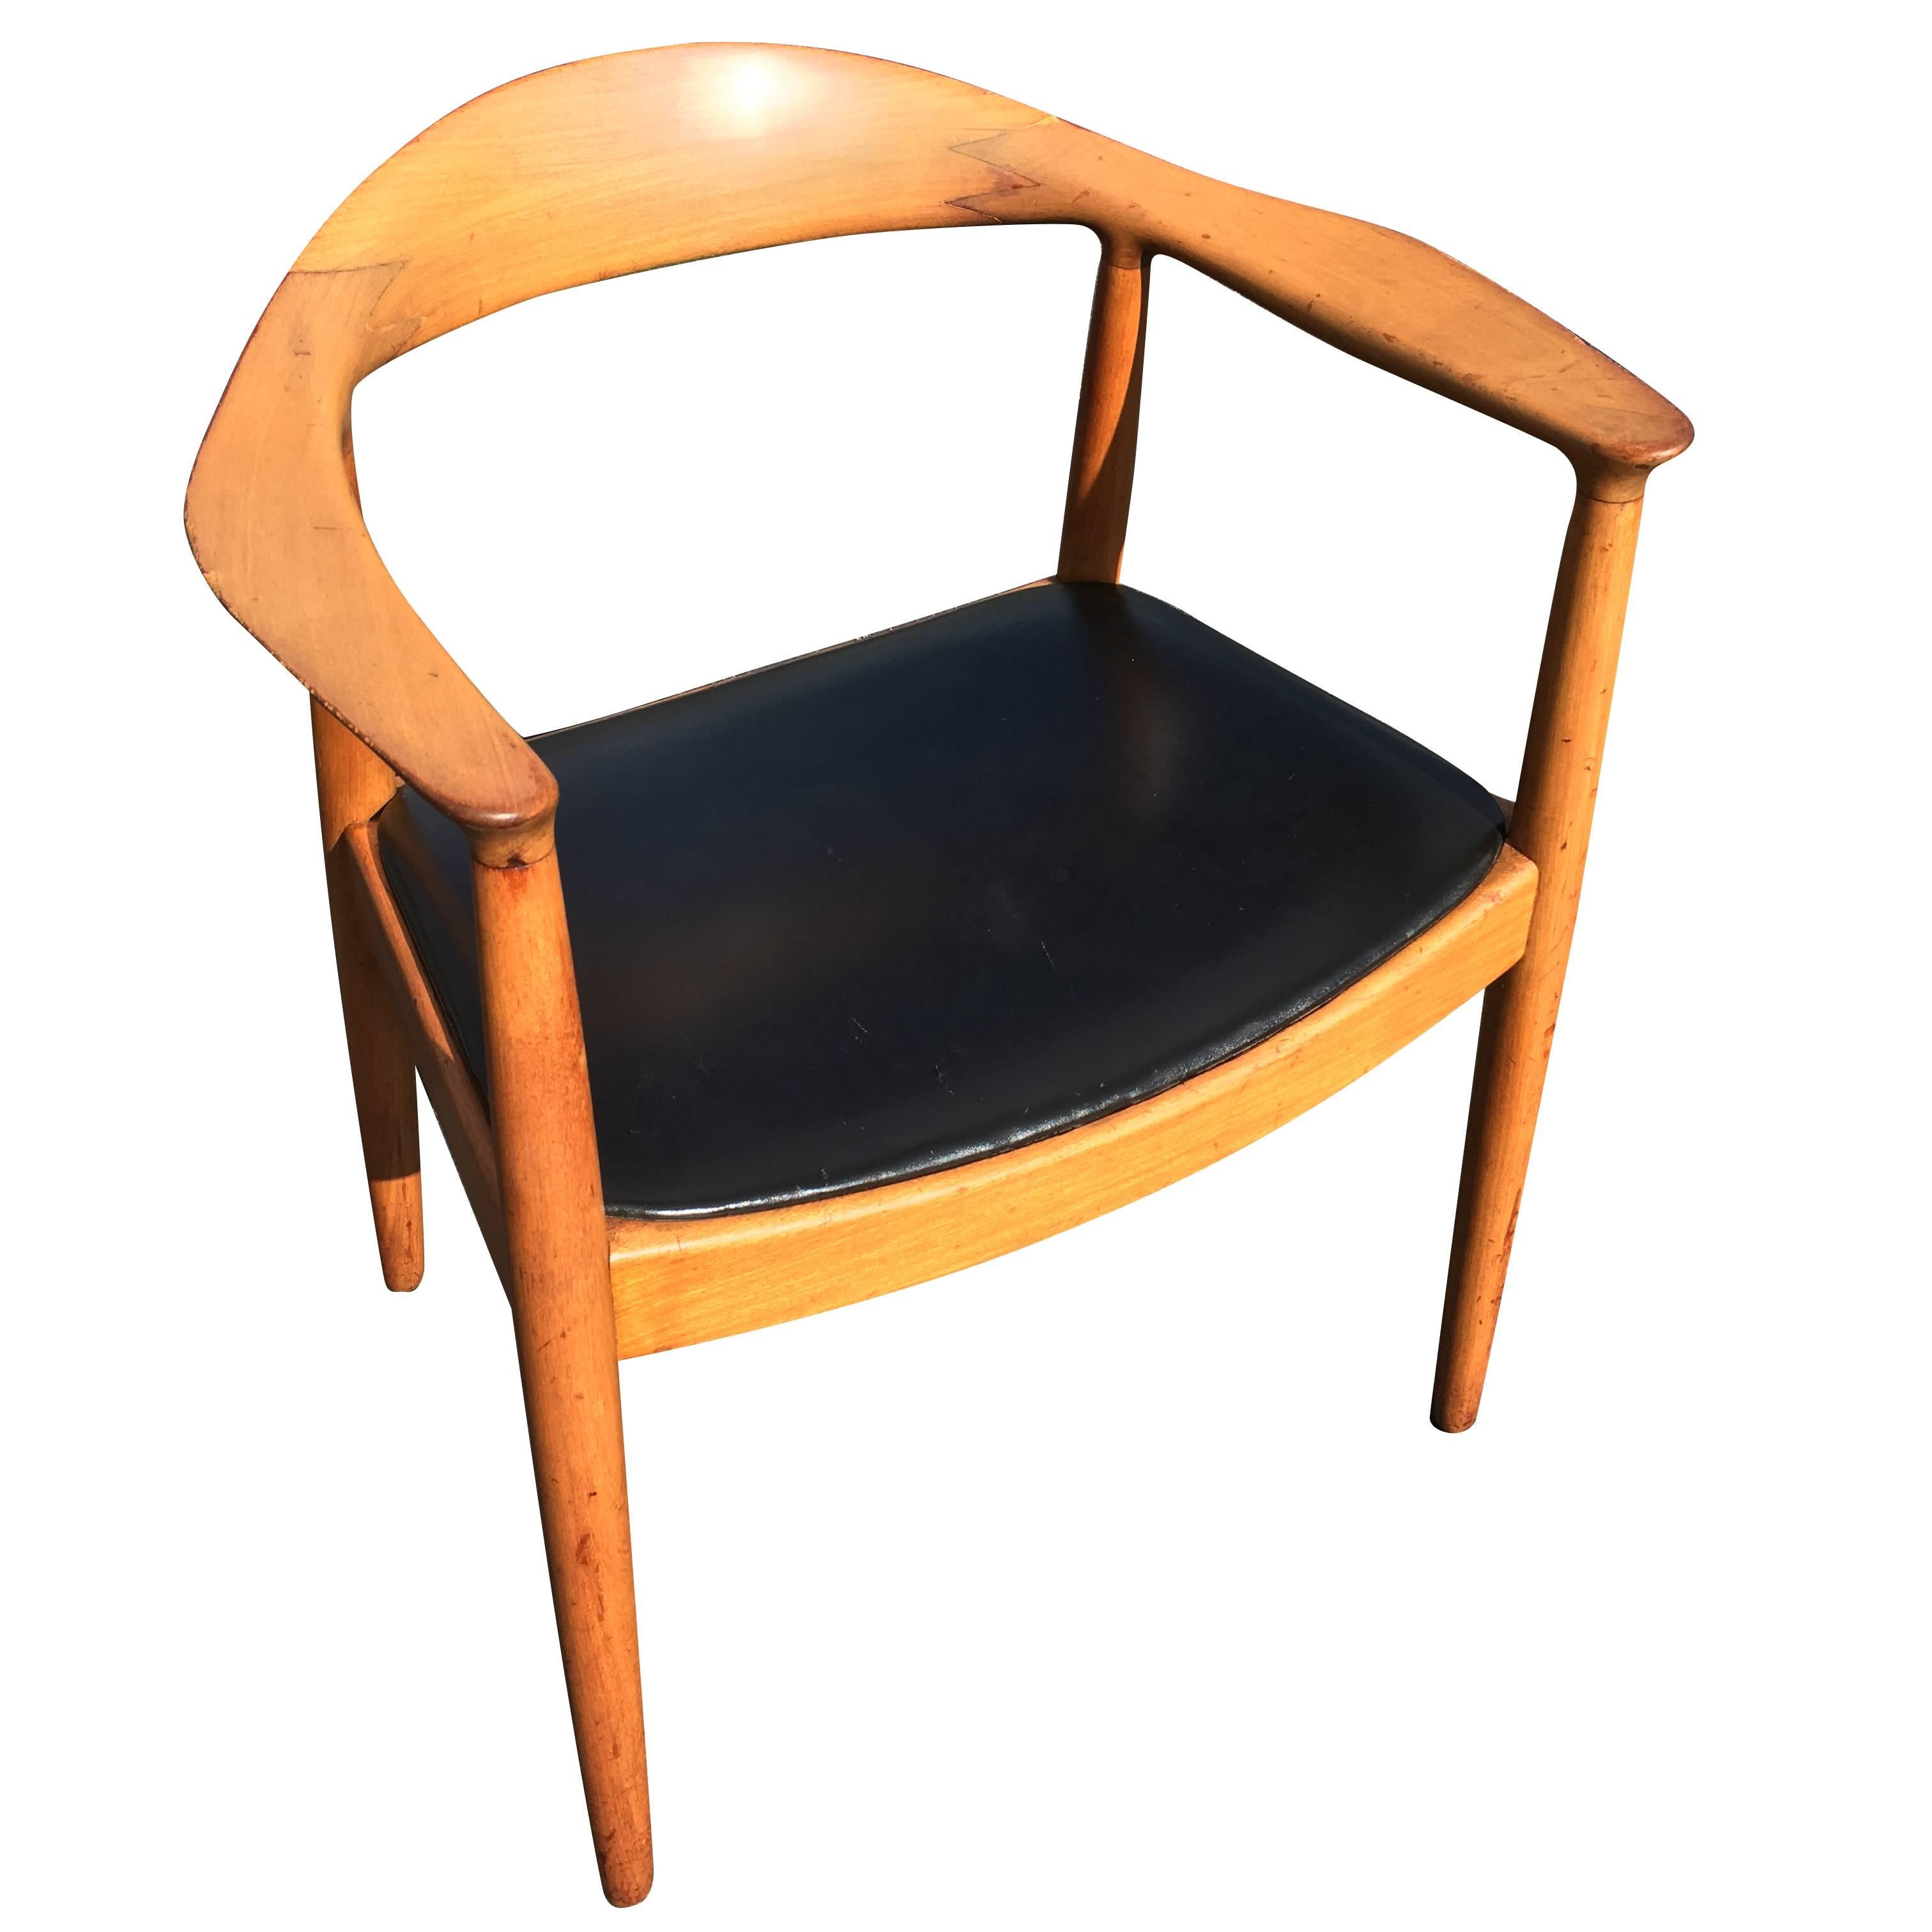 Hans Wegner Style "The Chair" Armchair